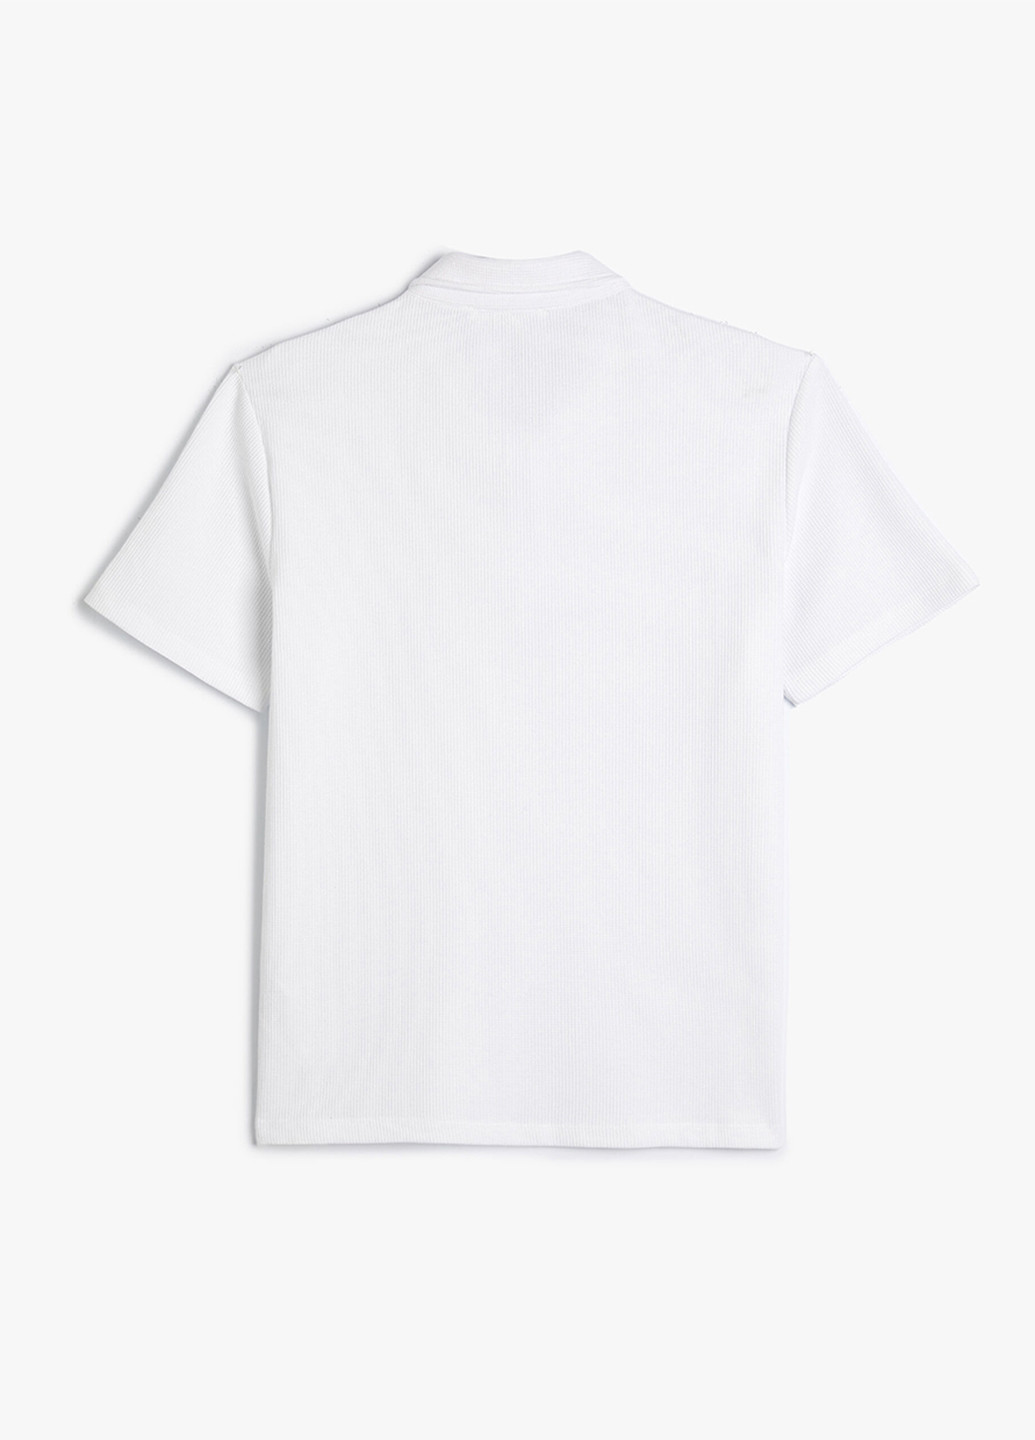 Белая футболка-поло для мужчин KOTON однотонная